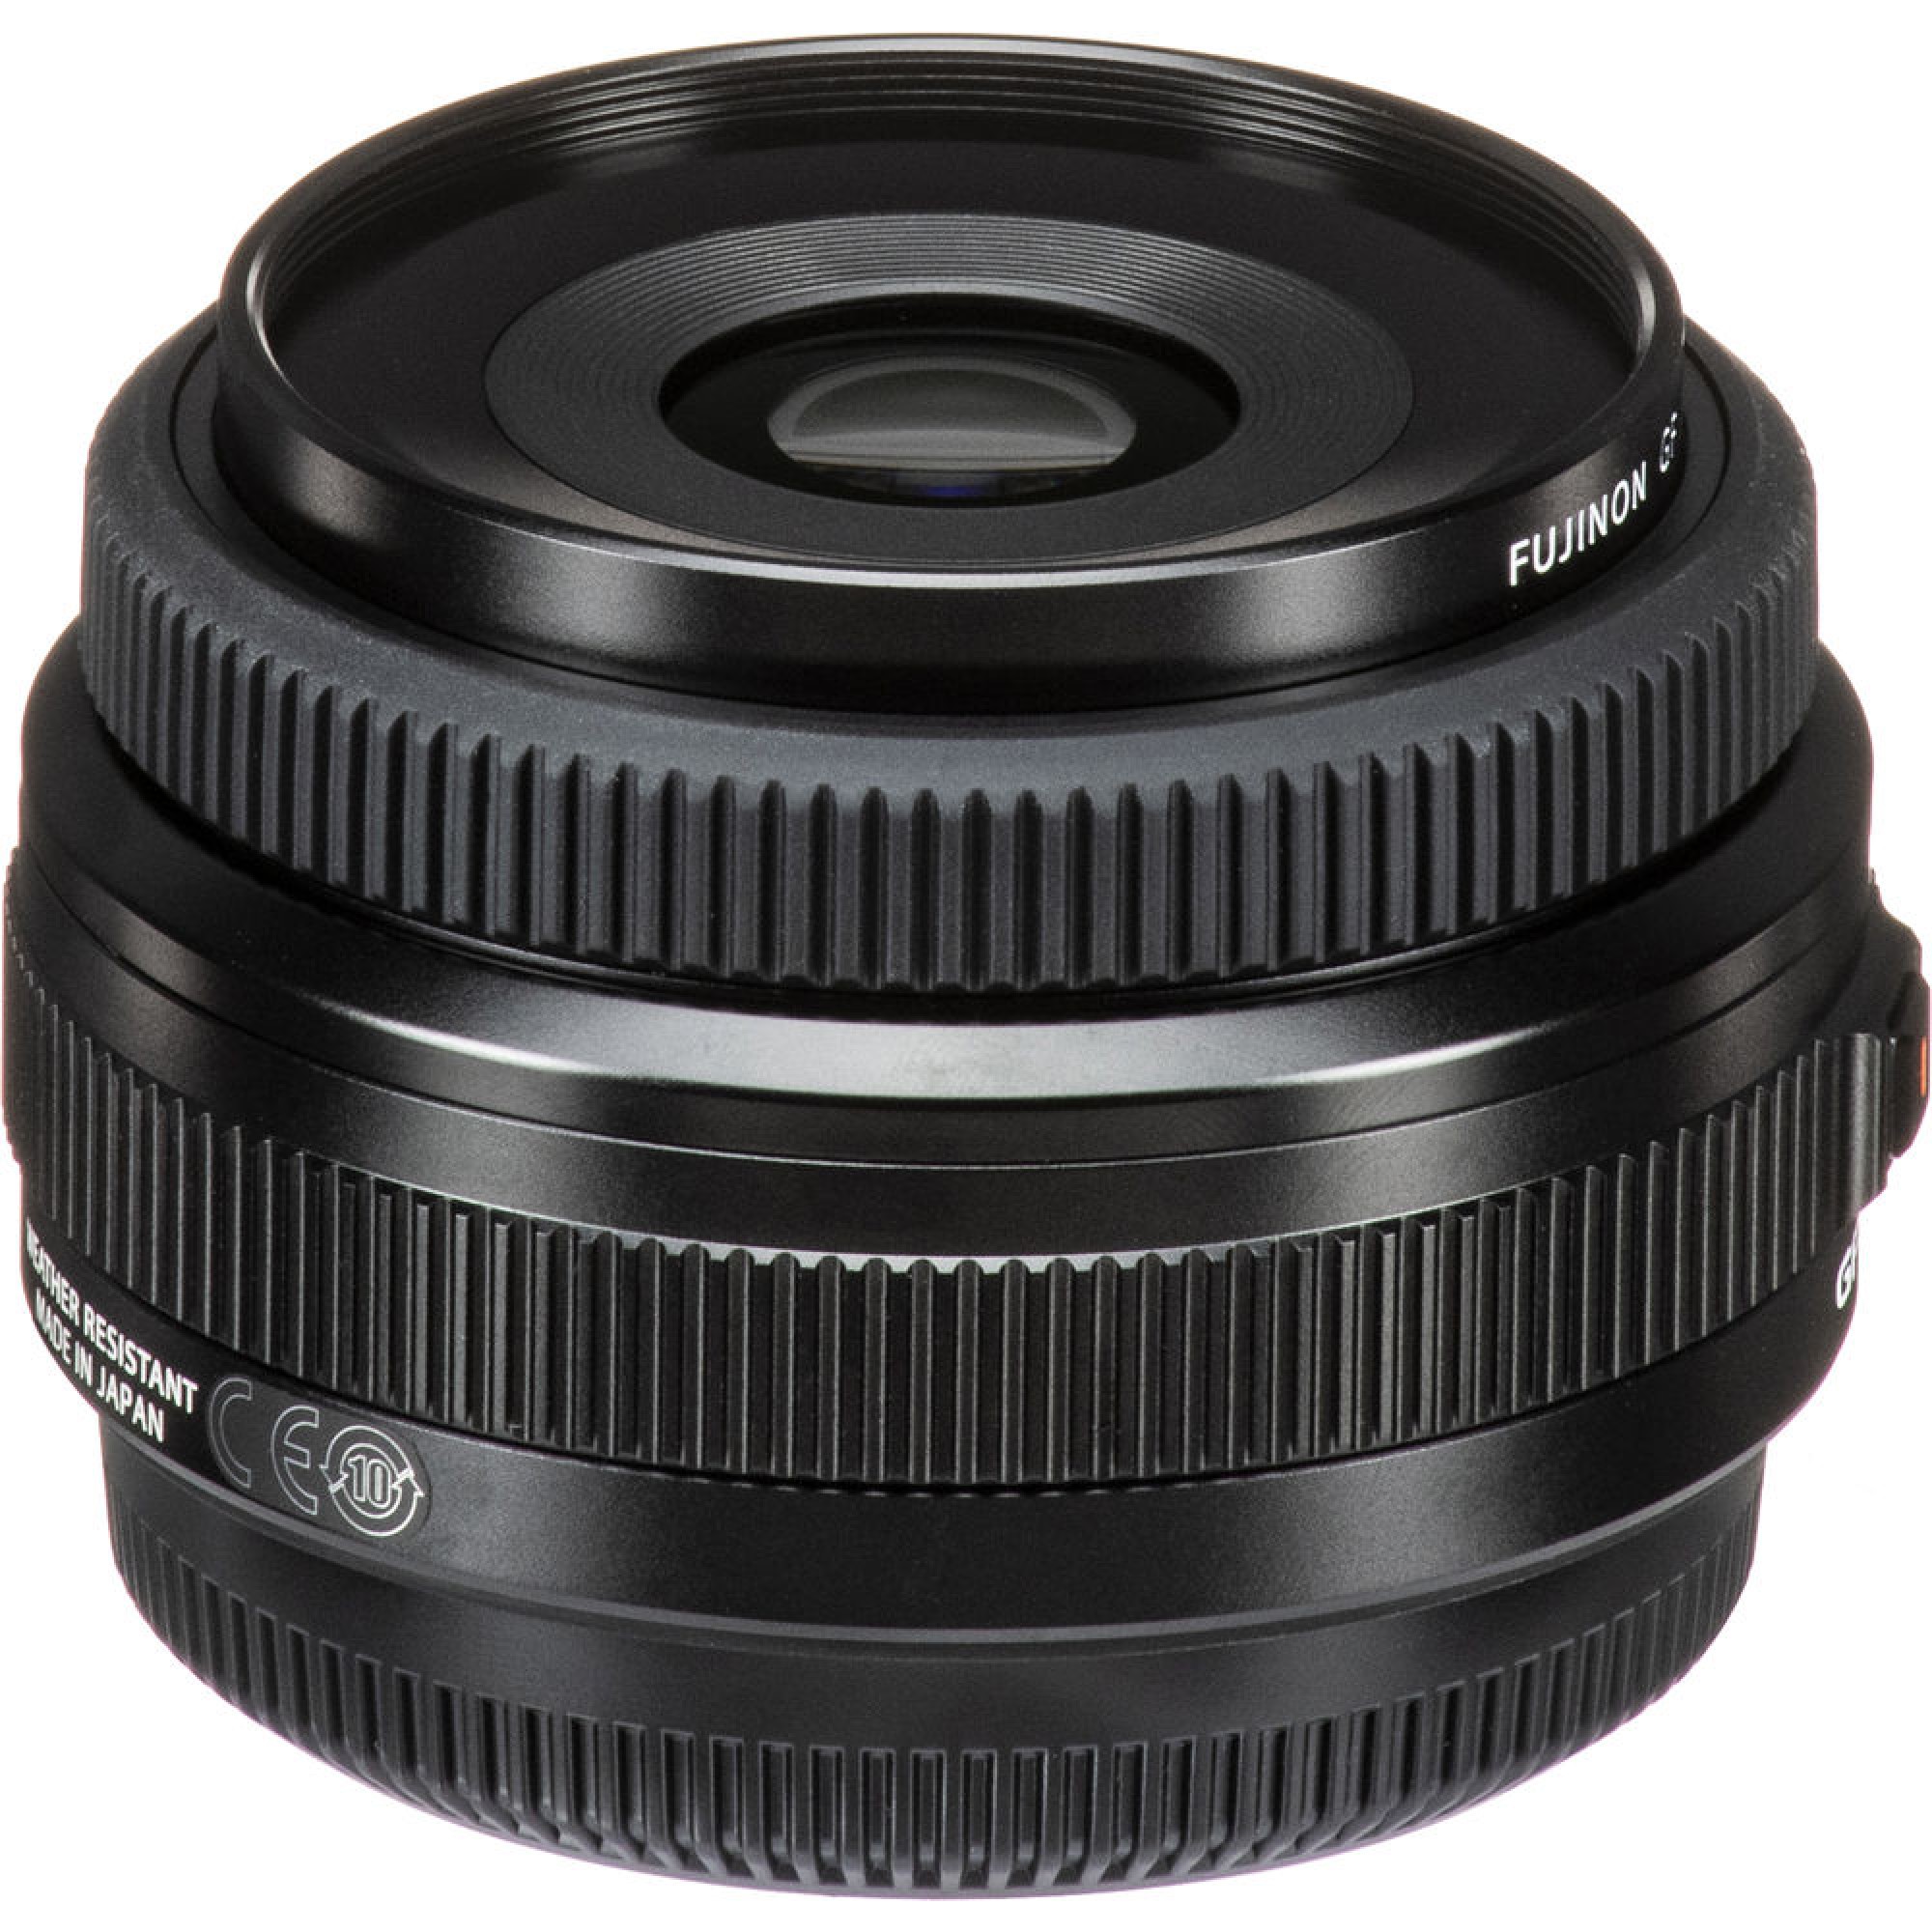 Left View: Fujifilm - GF50mm3.5 R LM WR Lens - Black